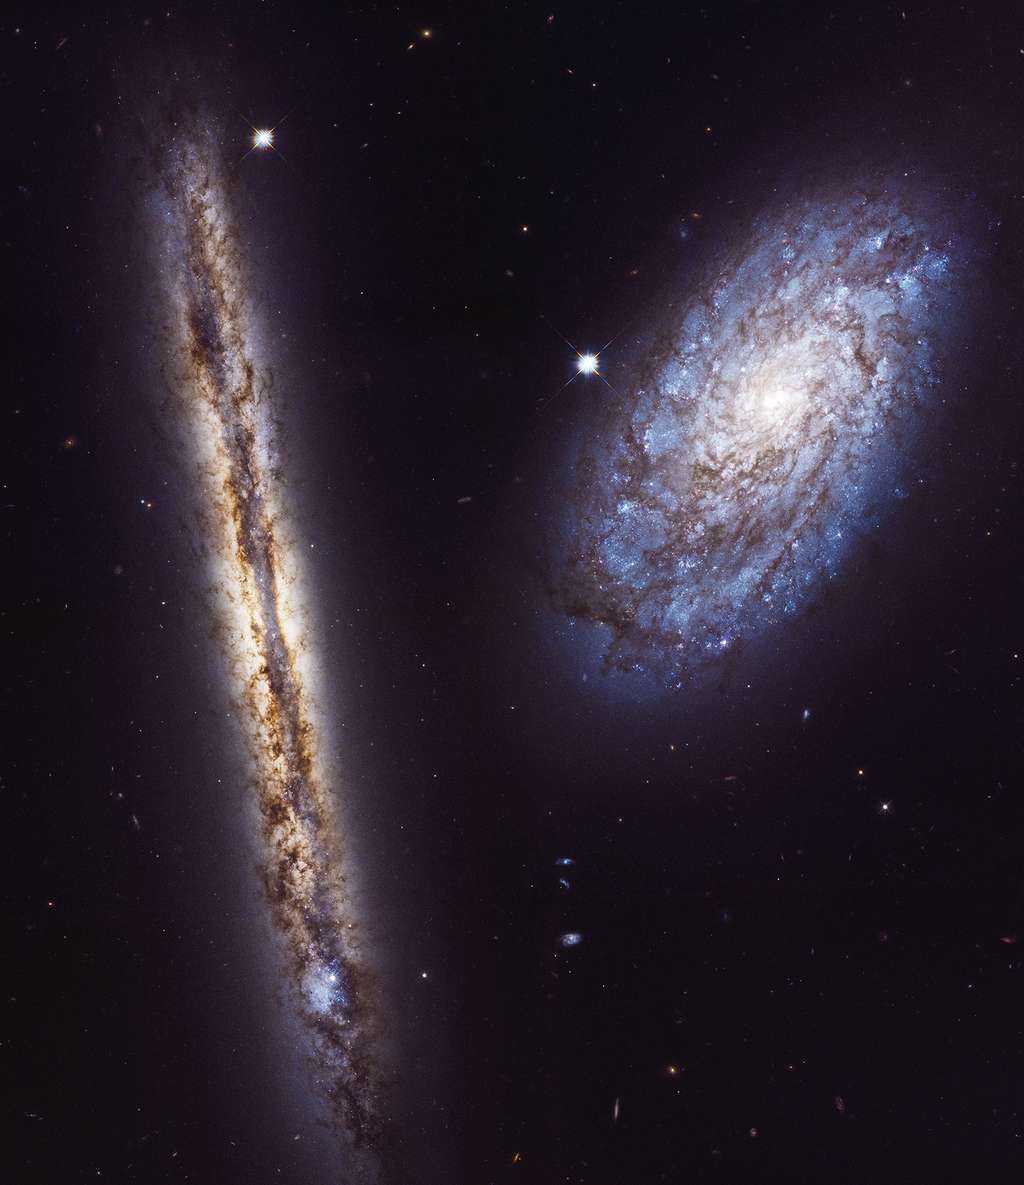 Image composite du duo de galaxies NGC 4302 et NGC 4298, prise avec la caméra WFC3 d’Hubble entre le 2 et le 22 janvier 2017. Téléchargez l’image en haute résolution <a href="https://cdn.spacetelescope.org/archives/images/large/heic1709a.jpg" target="_blank">ici</a> (16,8 Mo). © Nasa, ESA, M. Mutchler (STScI)